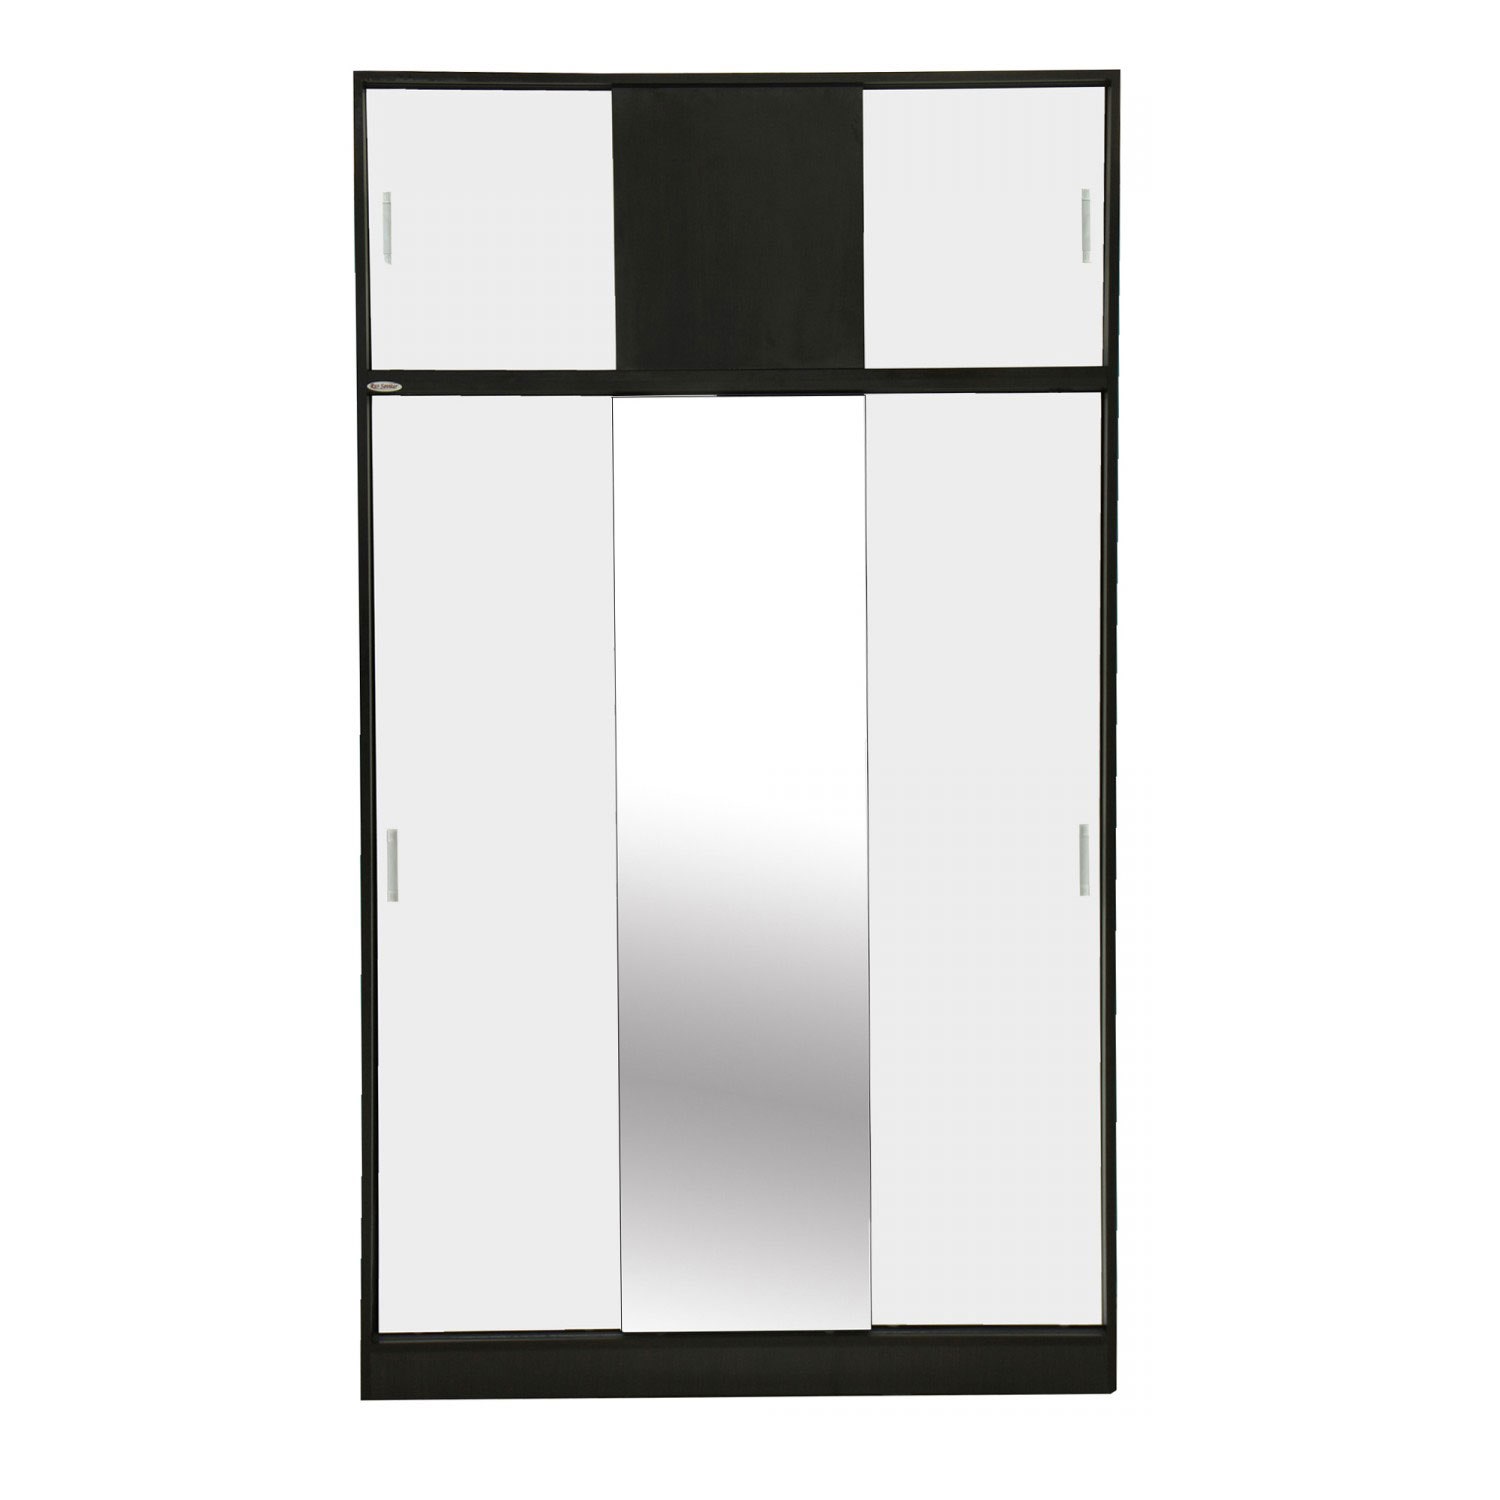 Dulap dormitor Raul D3, magia + alb, 6 usi glisante, cu oglinda, 120 x 50 x 210 cm, 3C